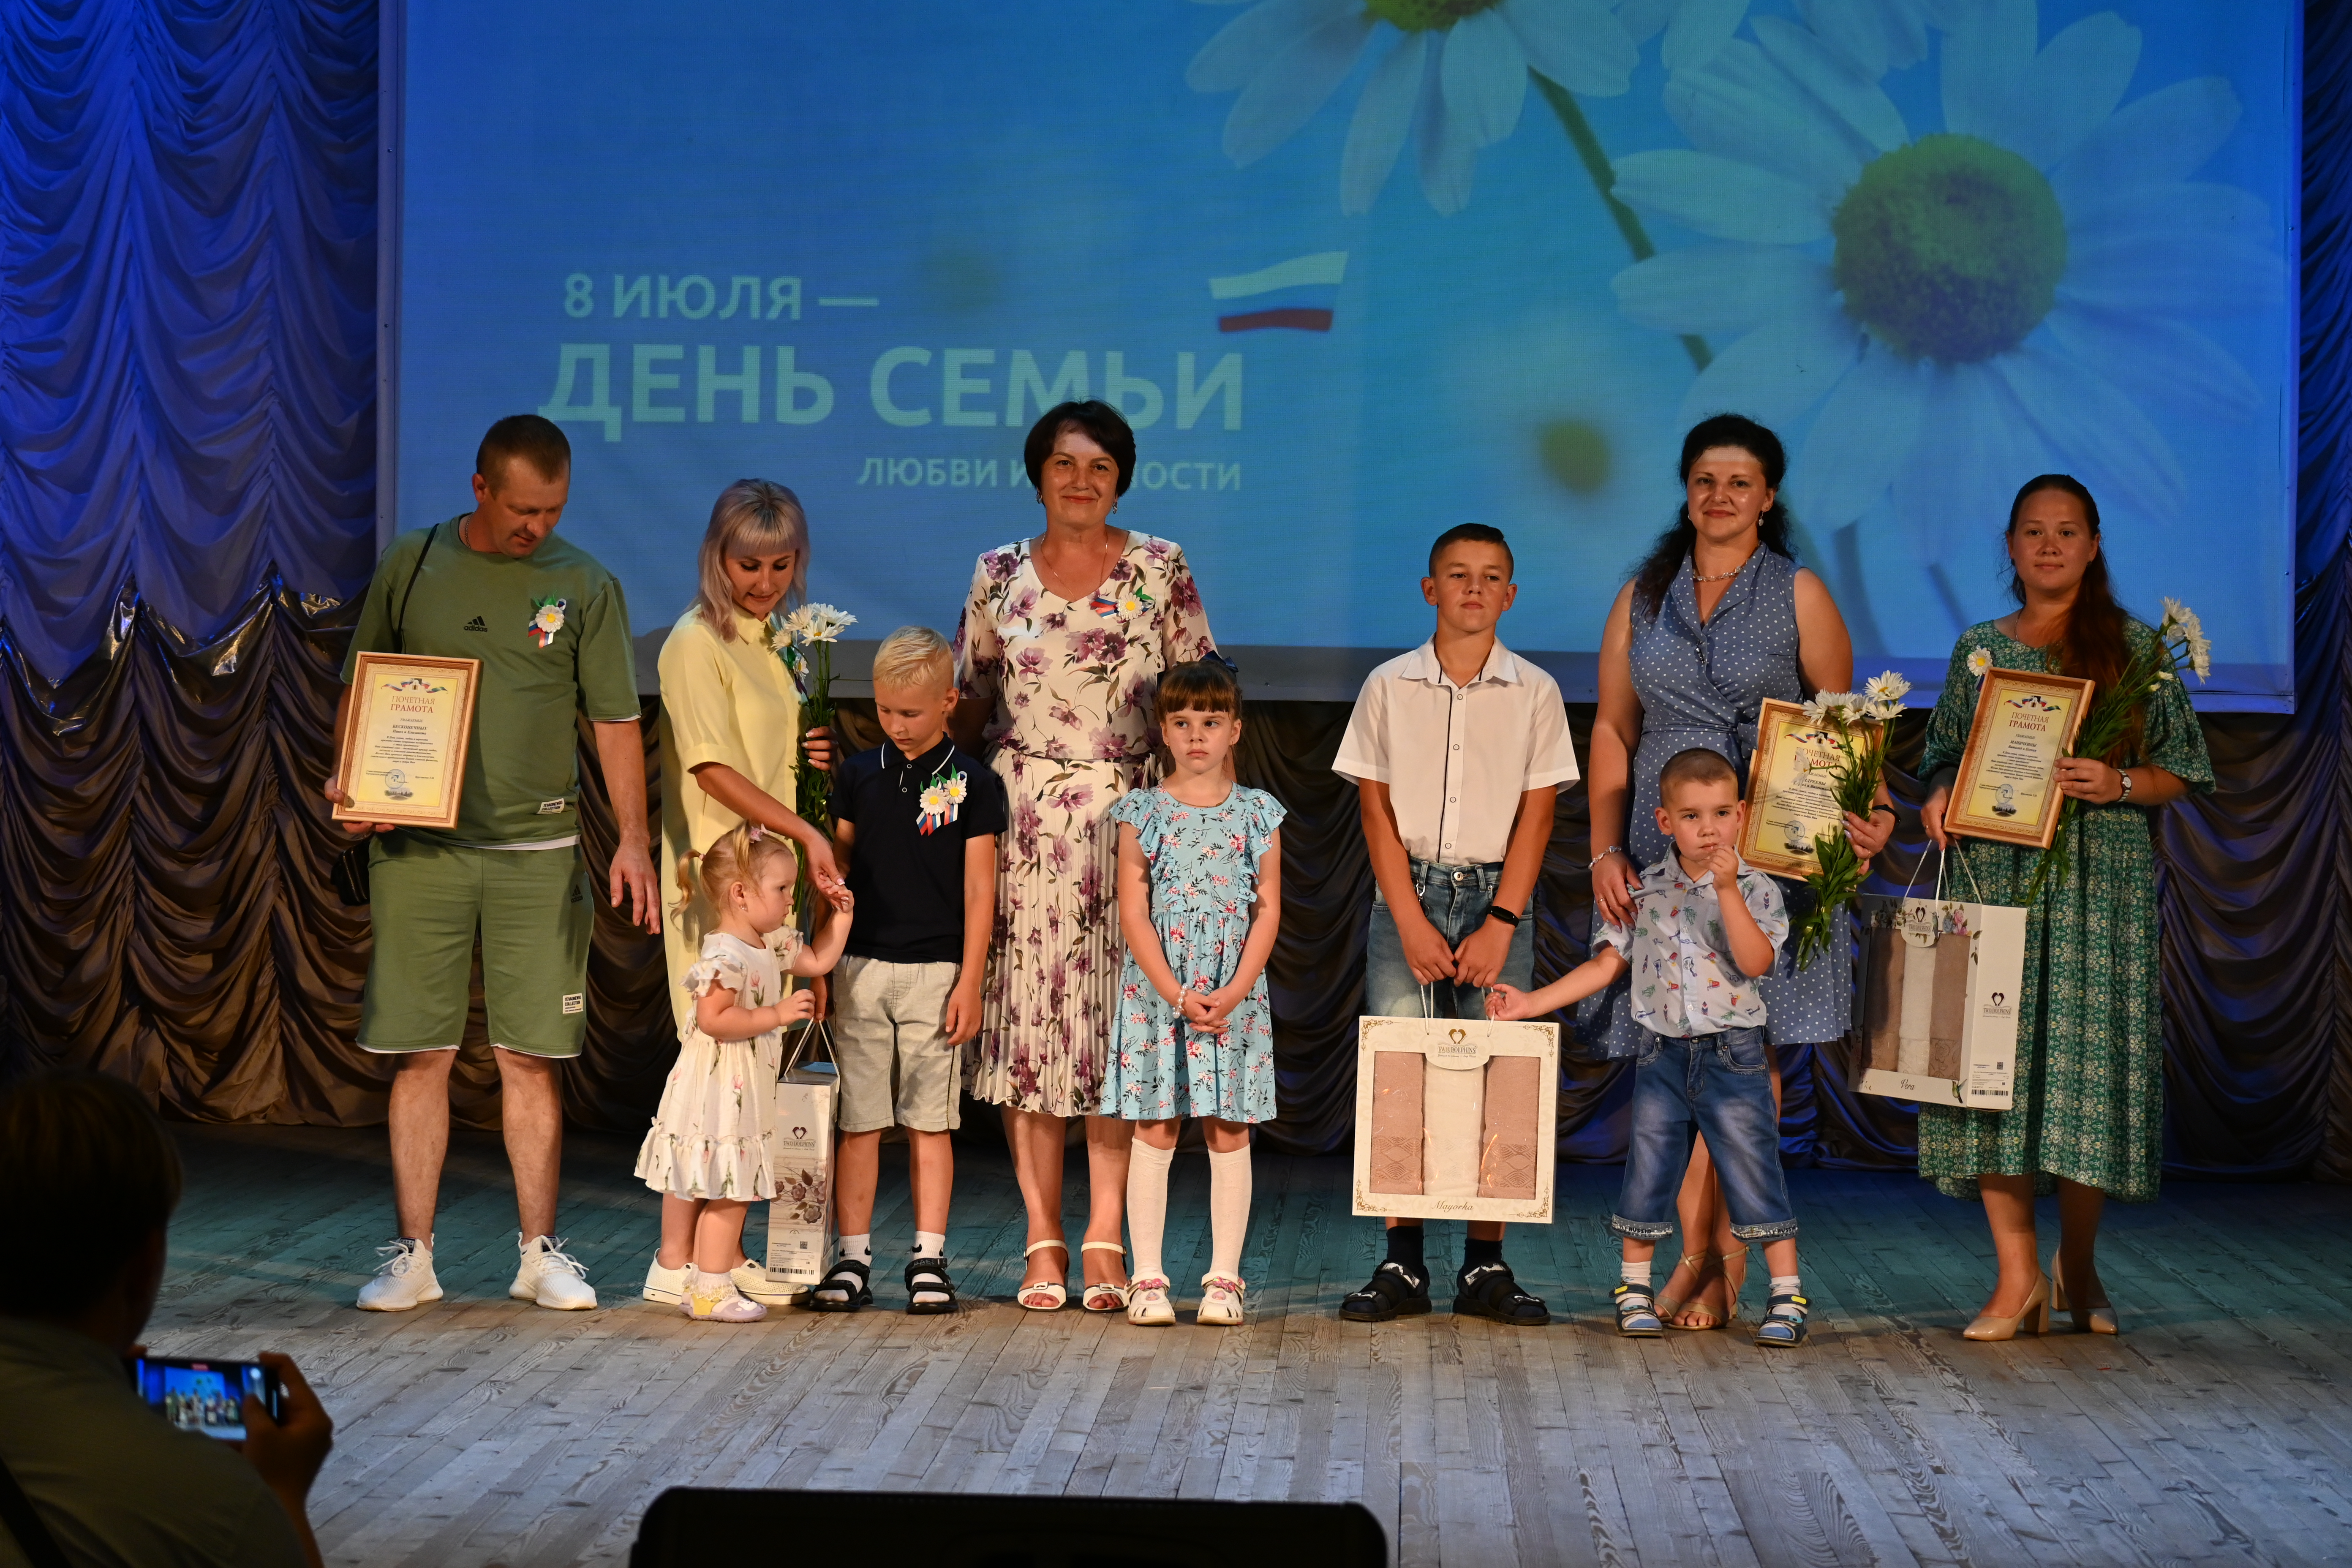 День семьи, любви и верности прошел для жителей Чернянского района.